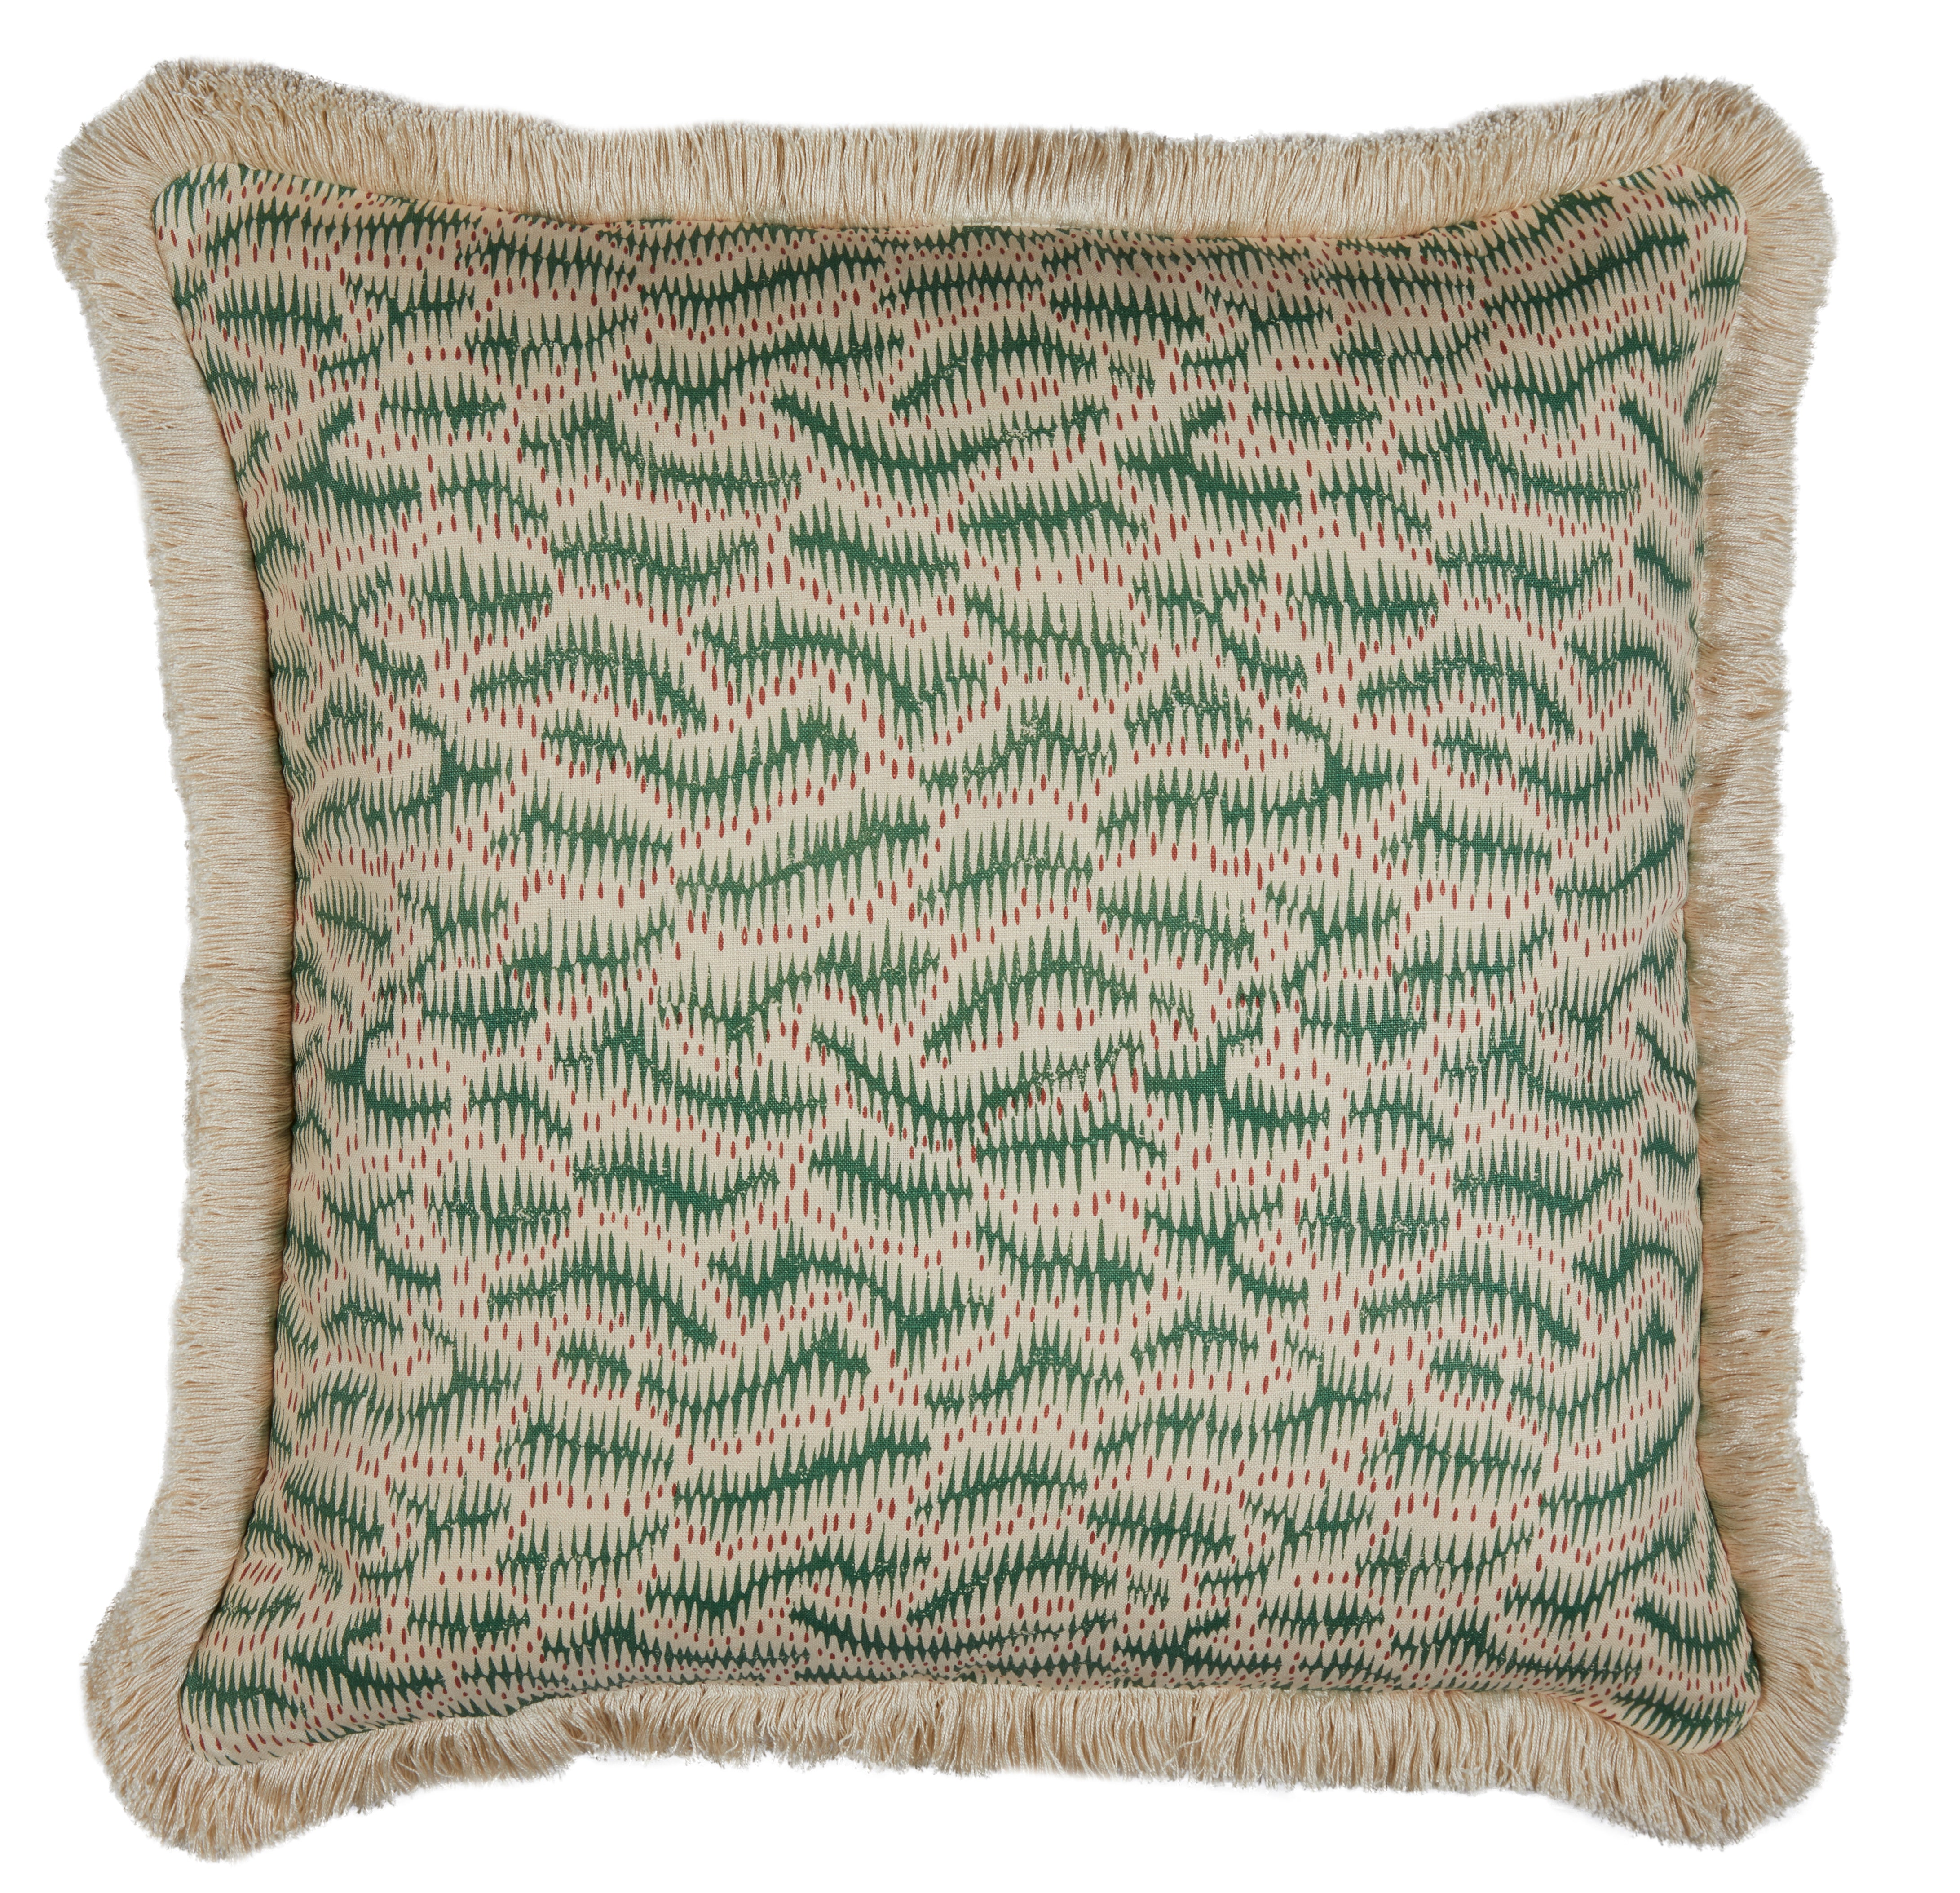 Daphne's Feathers Emerald Cushion with a Brush Fringe